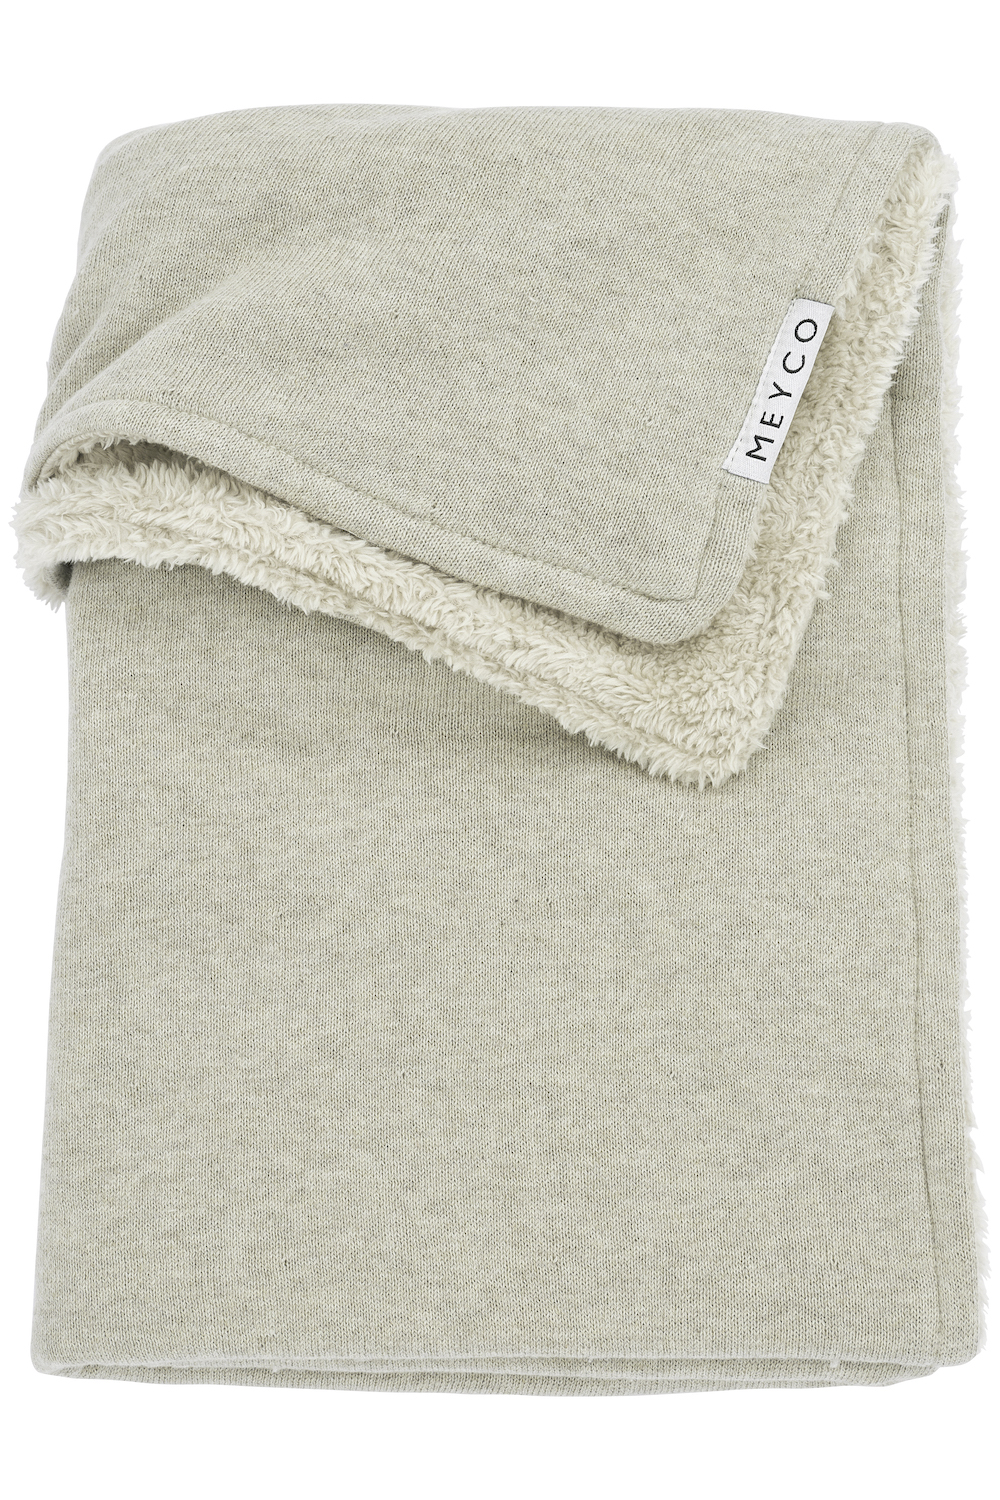 Ledikant deken Knit Basic teddy - sand melange - 100x150cm